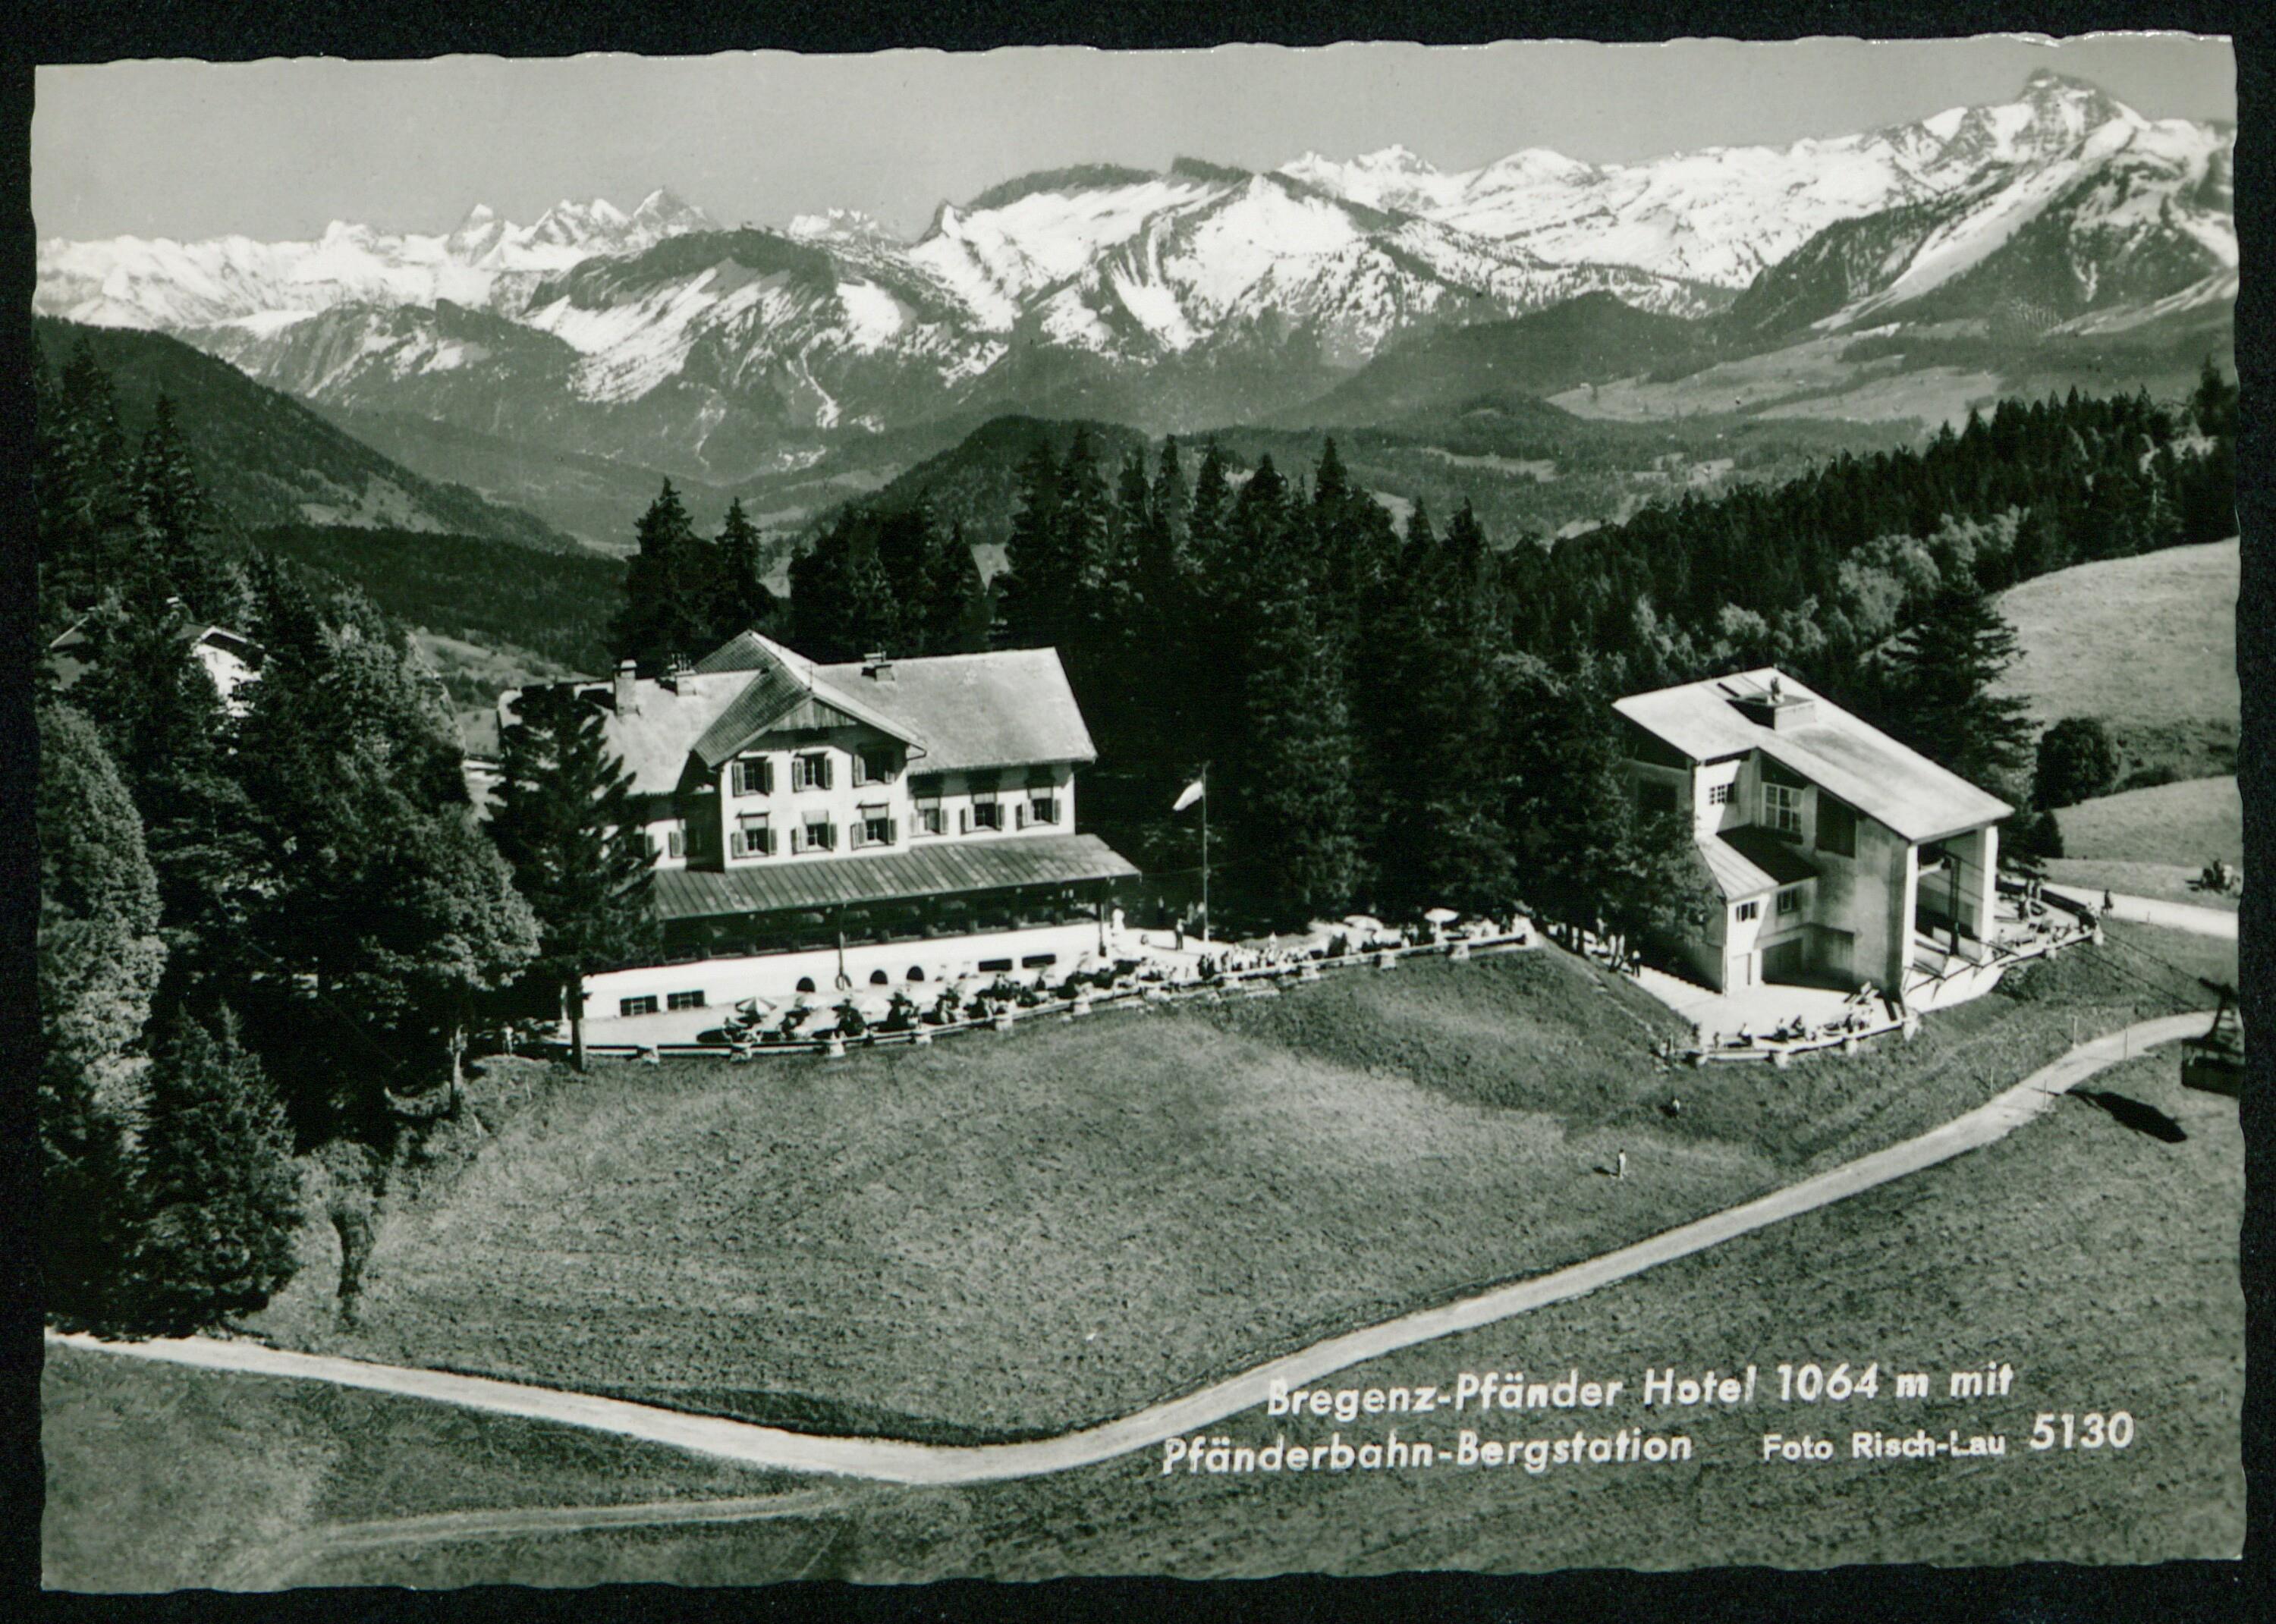 [Lochau] Bregenz-Pfänder Hotel 1064 m mit Pfänderbahn-Bergstation></div>


    <hr>
    <div class=